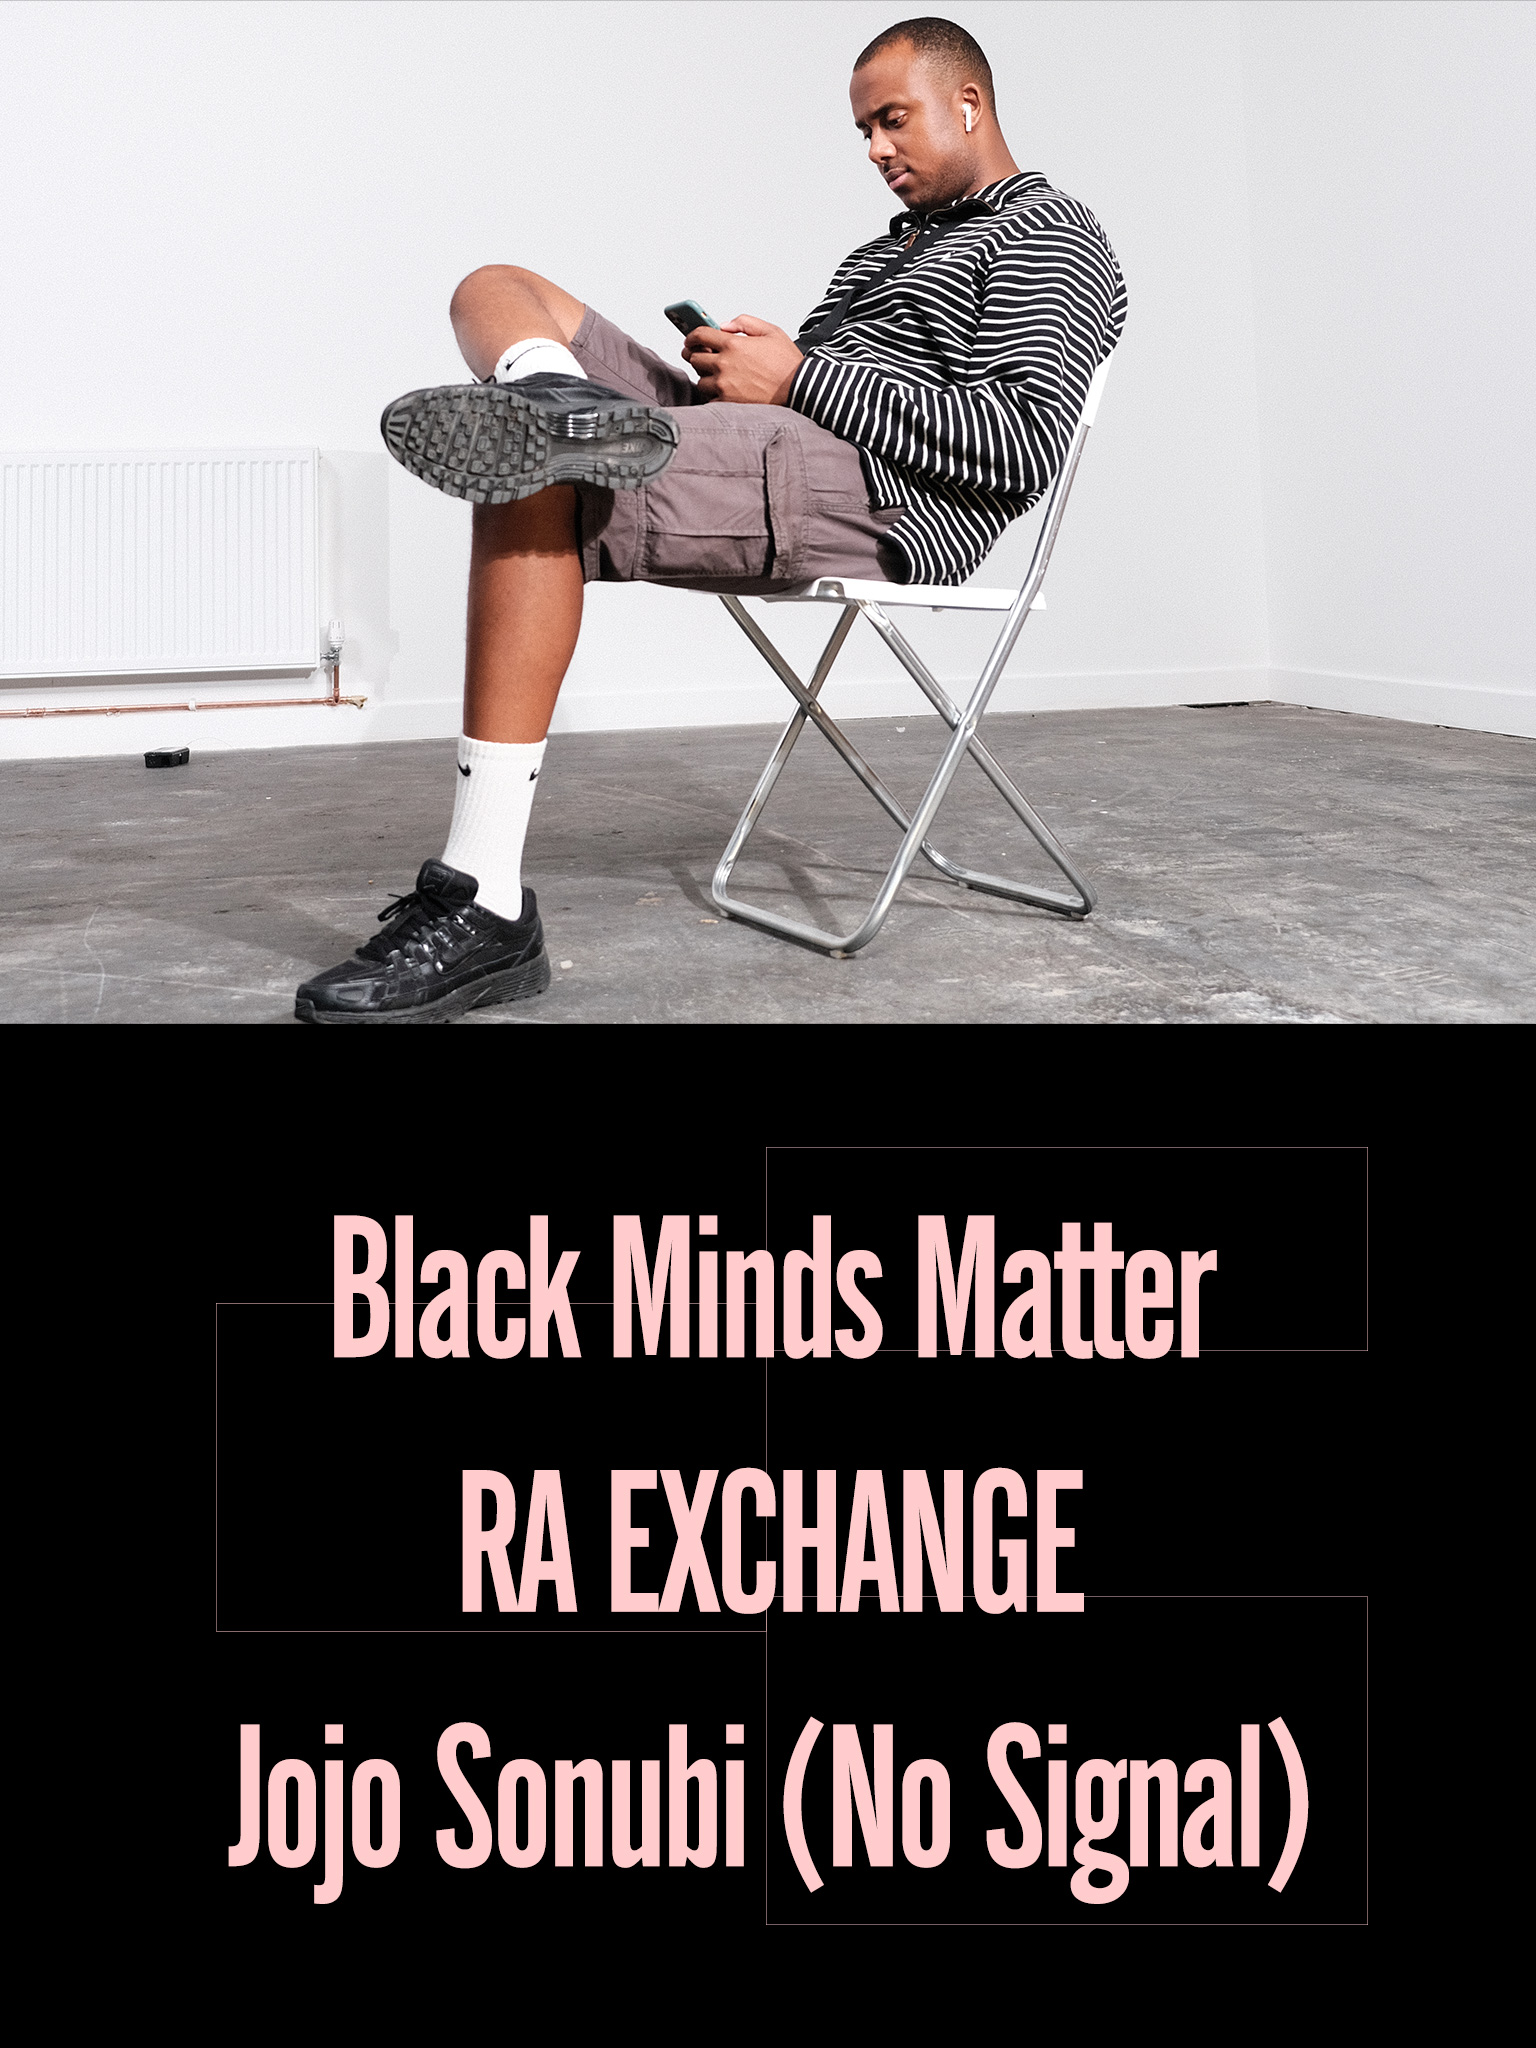 Black Minds Matter UK x RA Exchange: Jojo Sonubi (No Signal)